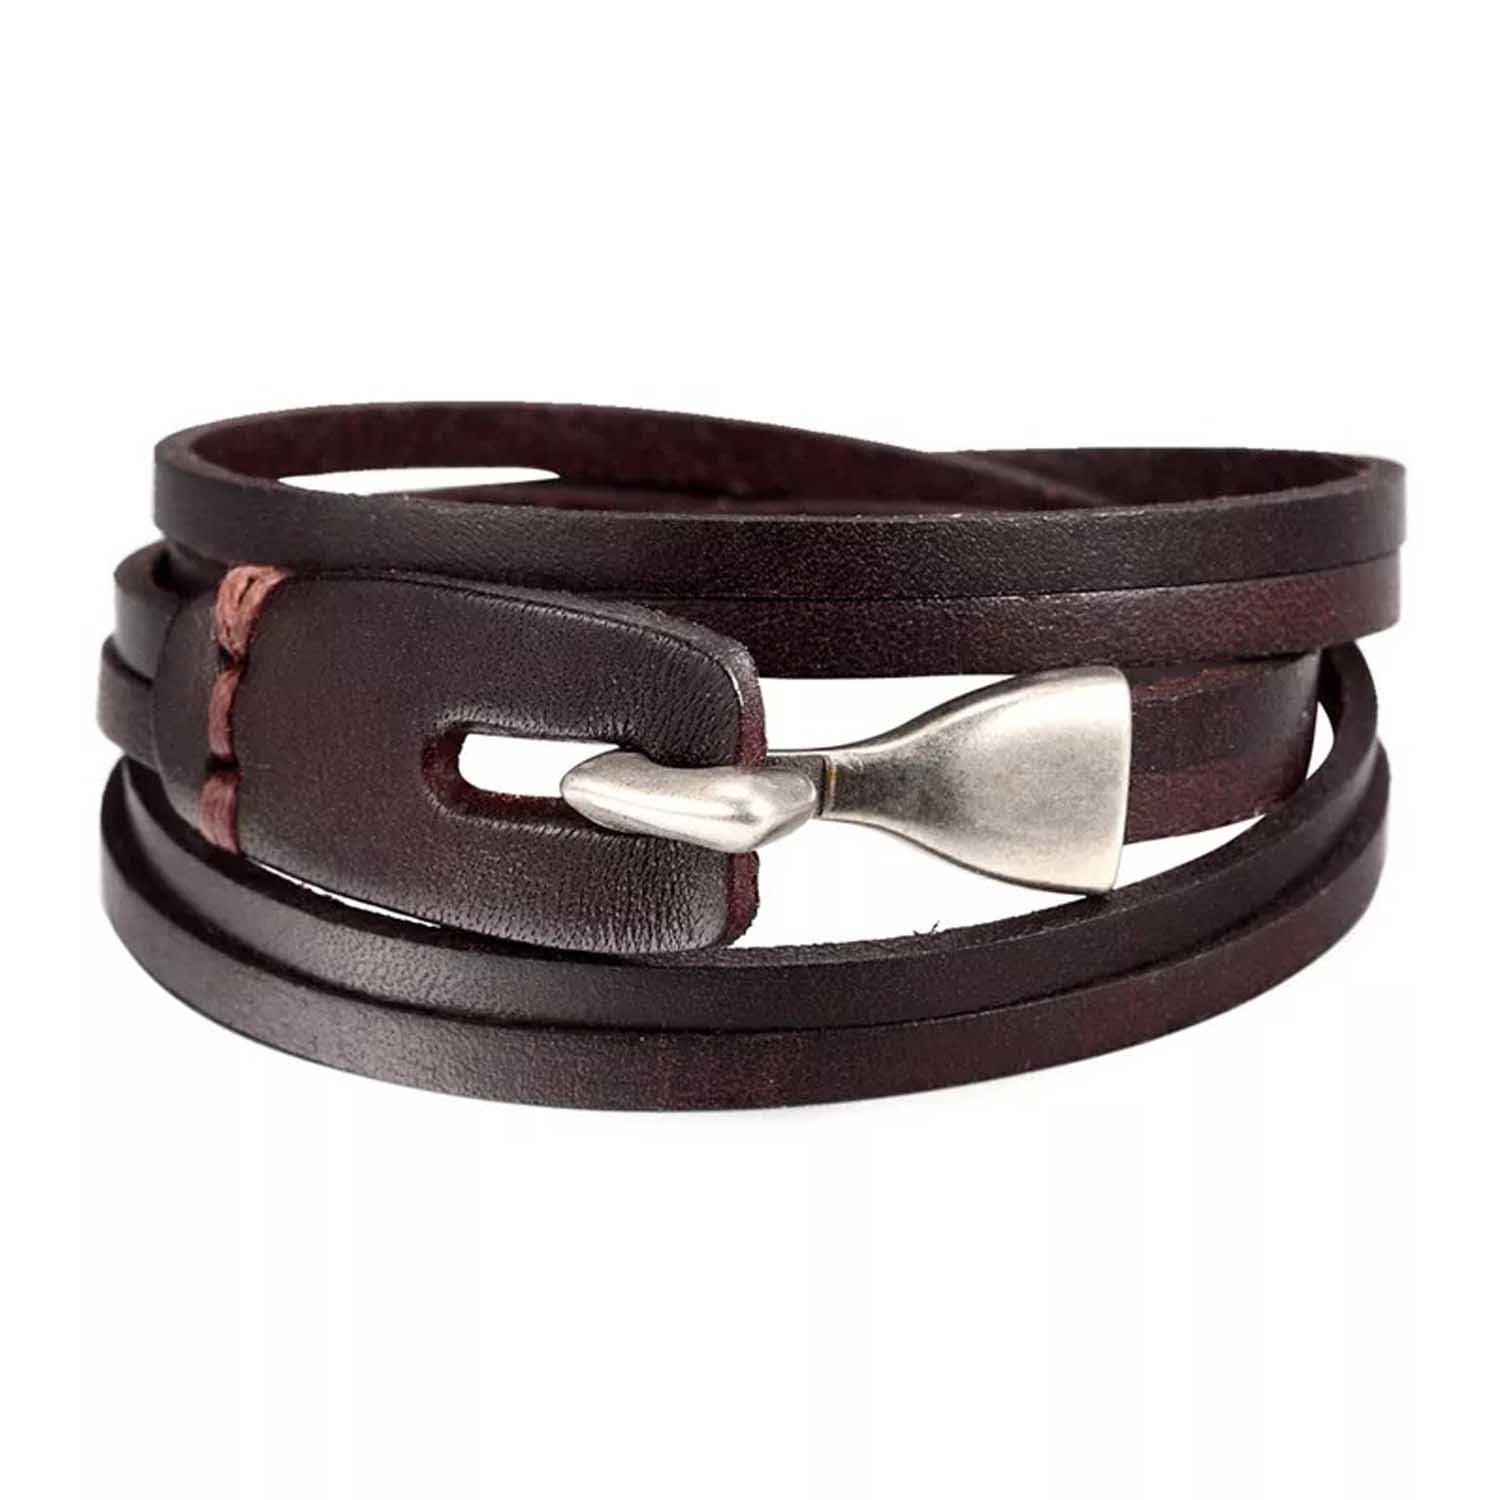 Men's Brown / Black Brown Multilayer Leather Bracelet With Hook Closure N'Damus London